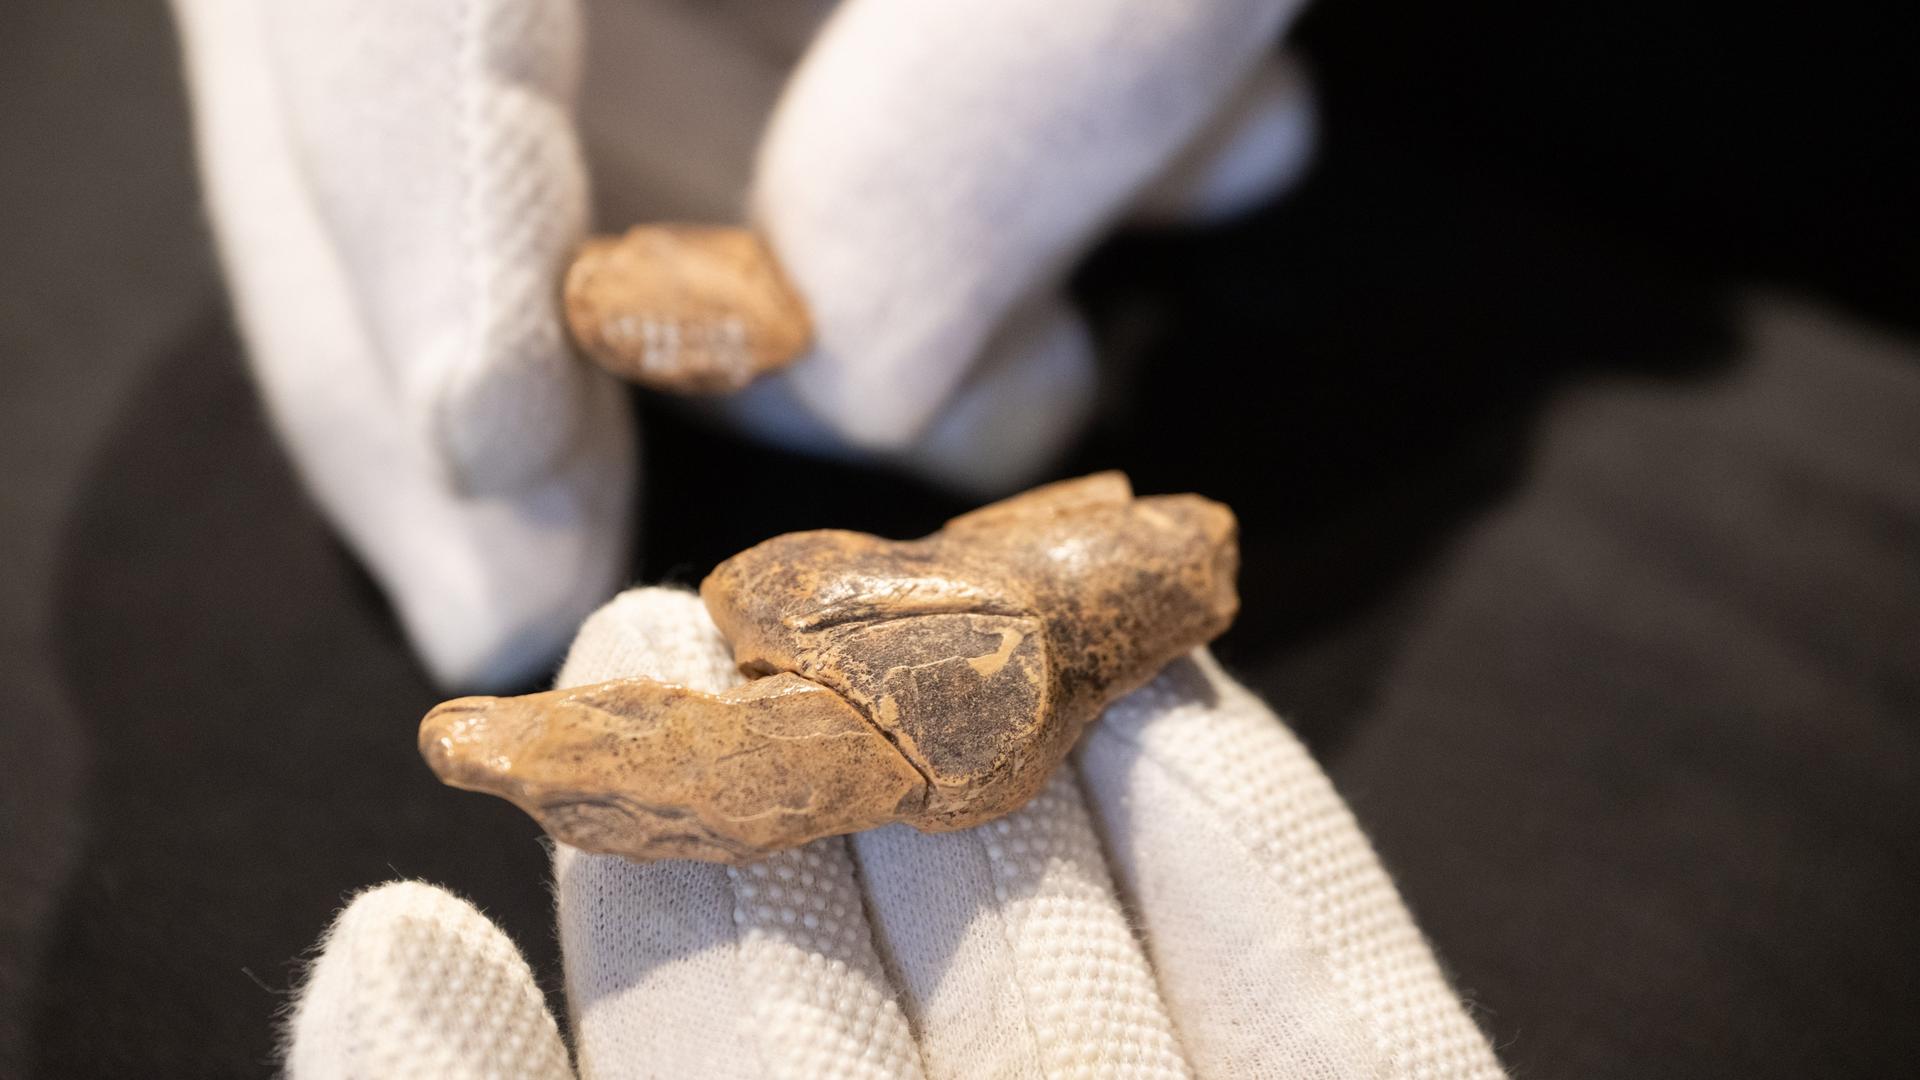 Ein Archäologe untersucht im Urgeschichtlichen Museum eine Elfenbeinschnitzerei, die vermutlich einen Bären darstellt.